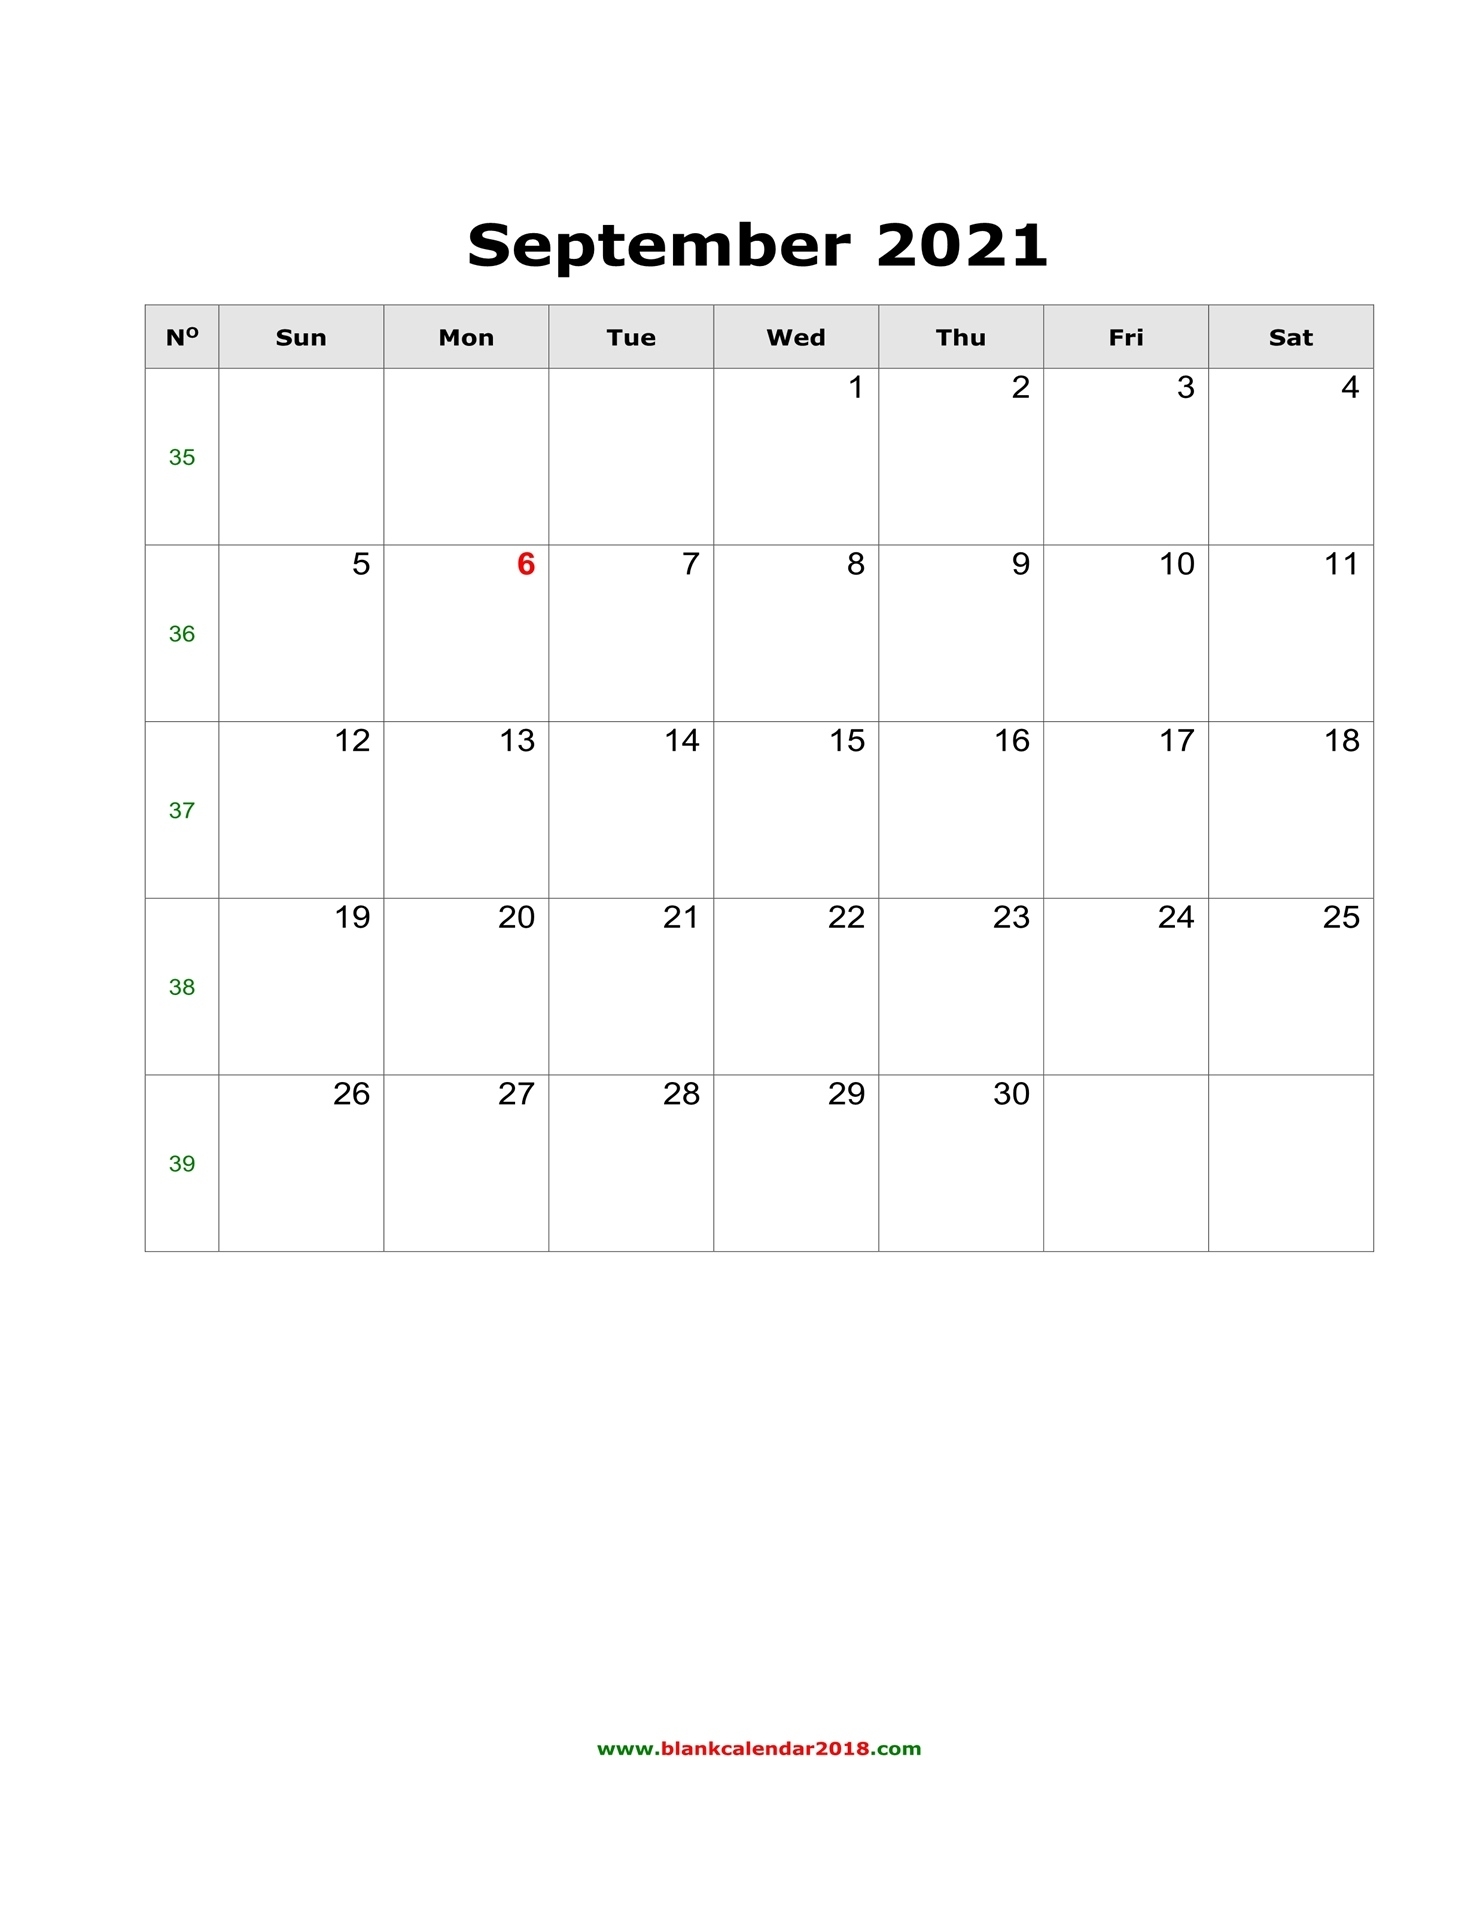 Blank Calendar For September 2021 September 2021 Calendar Word